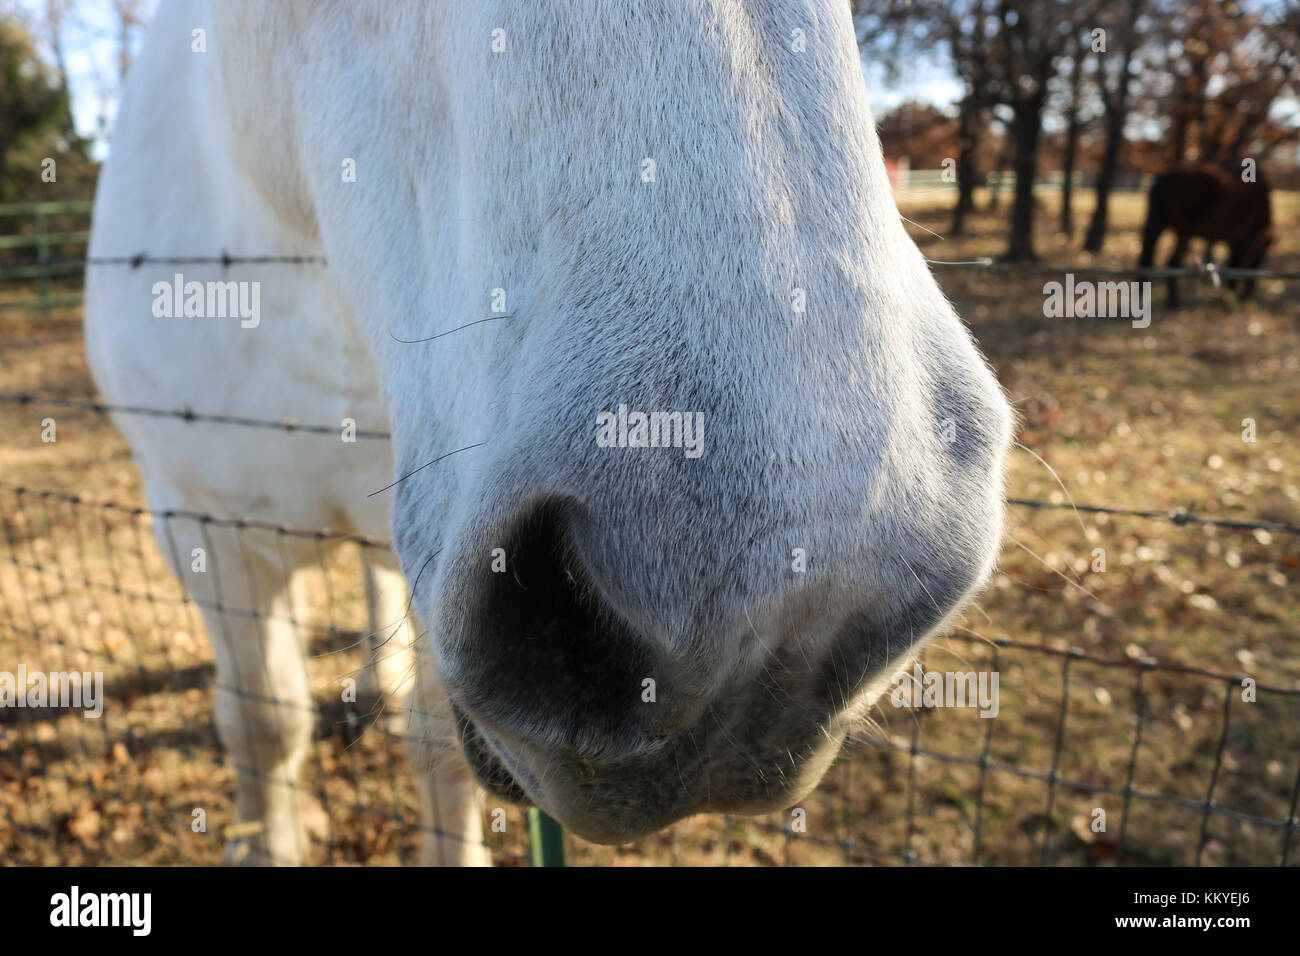 Pferd whisker-extreme Nahaufnahme des White Horse Nase mit seine Schnurrhaare von der Sonne hervorgehoben - Kopf über Draht Zaun, mit Bäumen, gestreichelt zu werden. Stockfoto